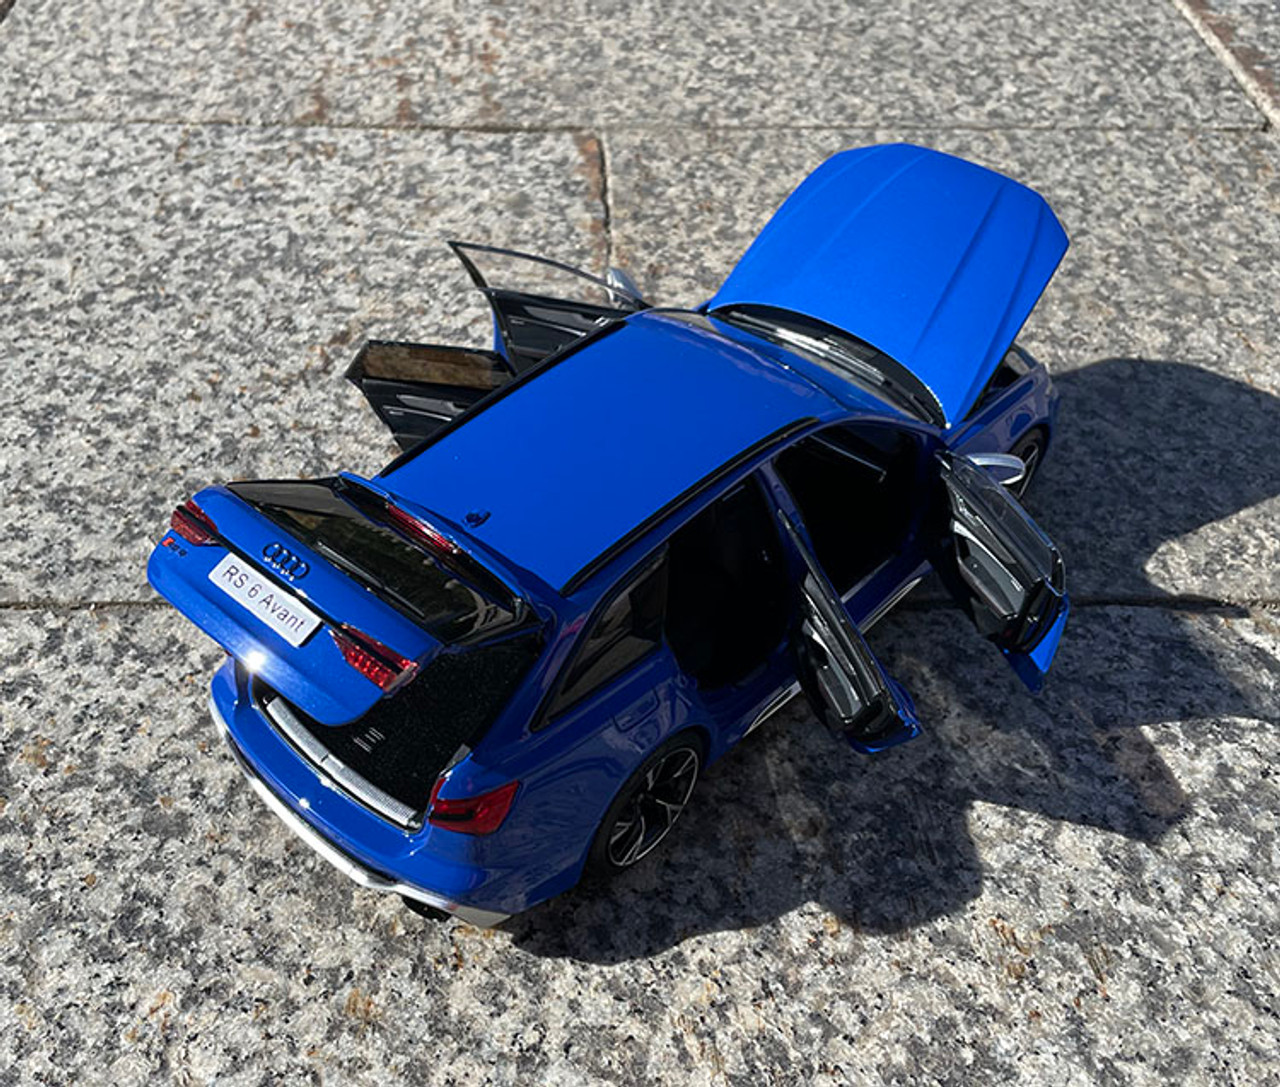 1/18 Kilo Works Audi RS6 C8 (Blue) Full Open Diecast Car Model